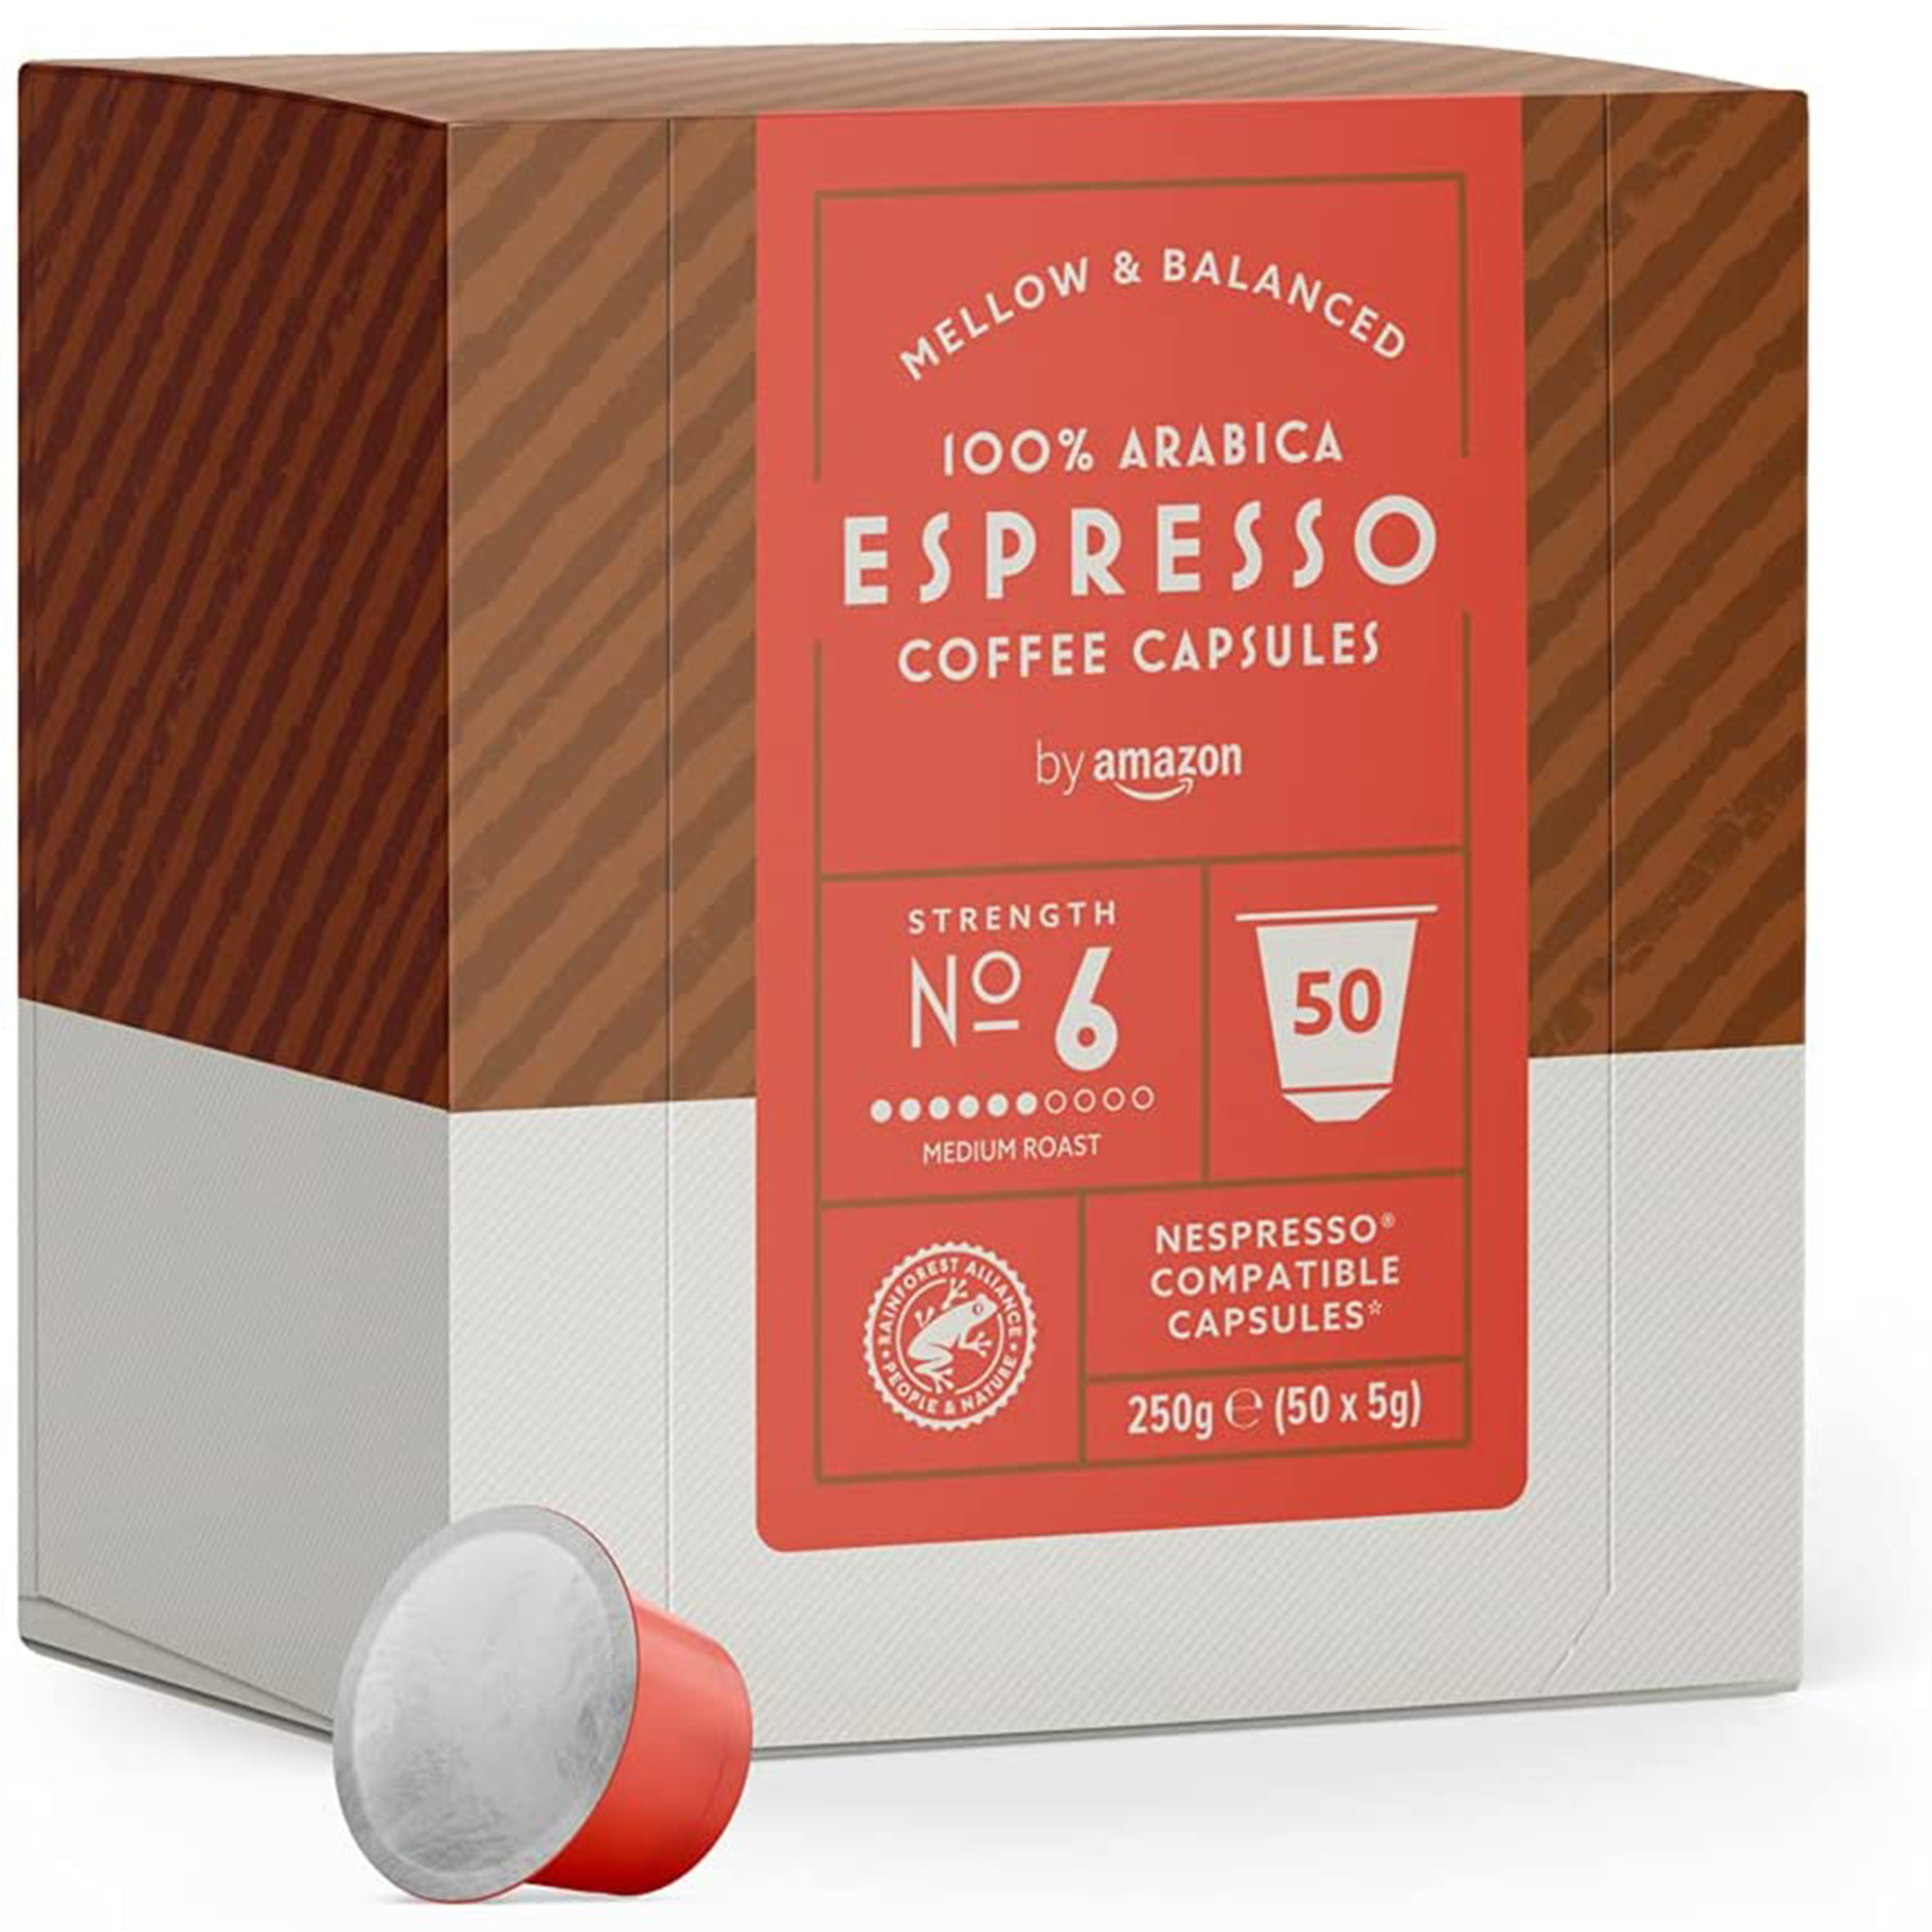 کپسول قهوه آمازون 50 عددی مدل Espresso